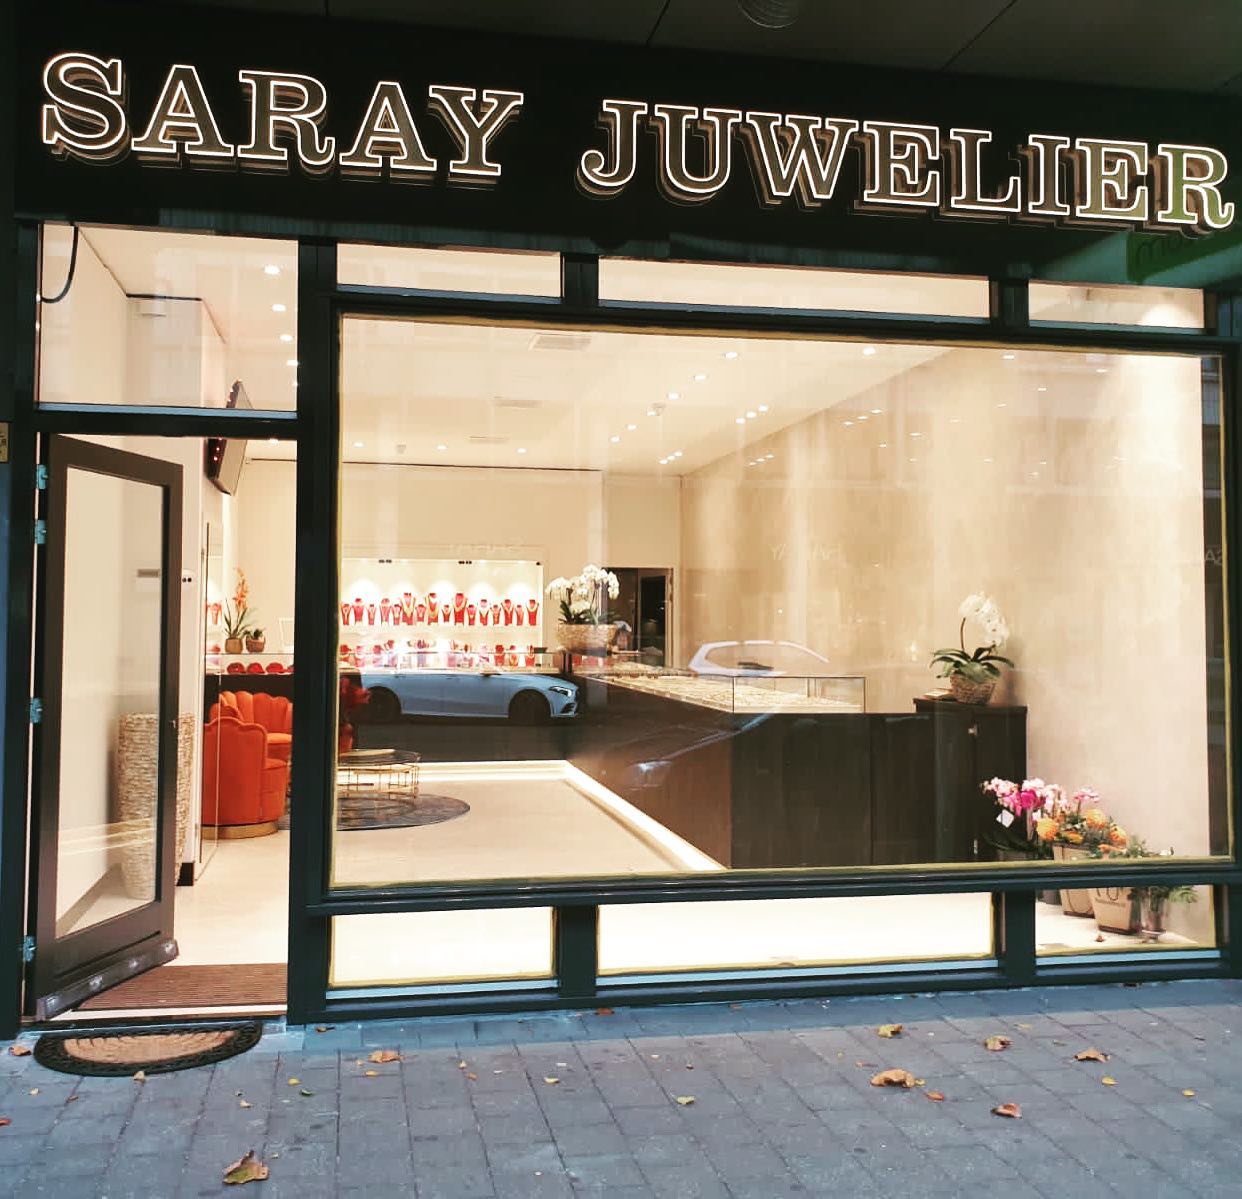 Onlangs hebben wij voor onze klant Saray Juwelier in Den Haag de vraag gekregen hun lichtreclame te plaatsen boven de entree van hun vernieuwde winkel. 
Met het meedenken, adviseren en het verstrekken van diverse voorstellen en schetsen heeft de klant uiteindelijk voor deze zeer chique uitstraling gekozen. 
Het resultaat mag er zijn en wij bedanken Saray Juwelier voor deze mooie opdracht! #sarayjuwelierdenhaag
#buislichtreclame #lichtreclame #signing #sign #opvallen #denhaag